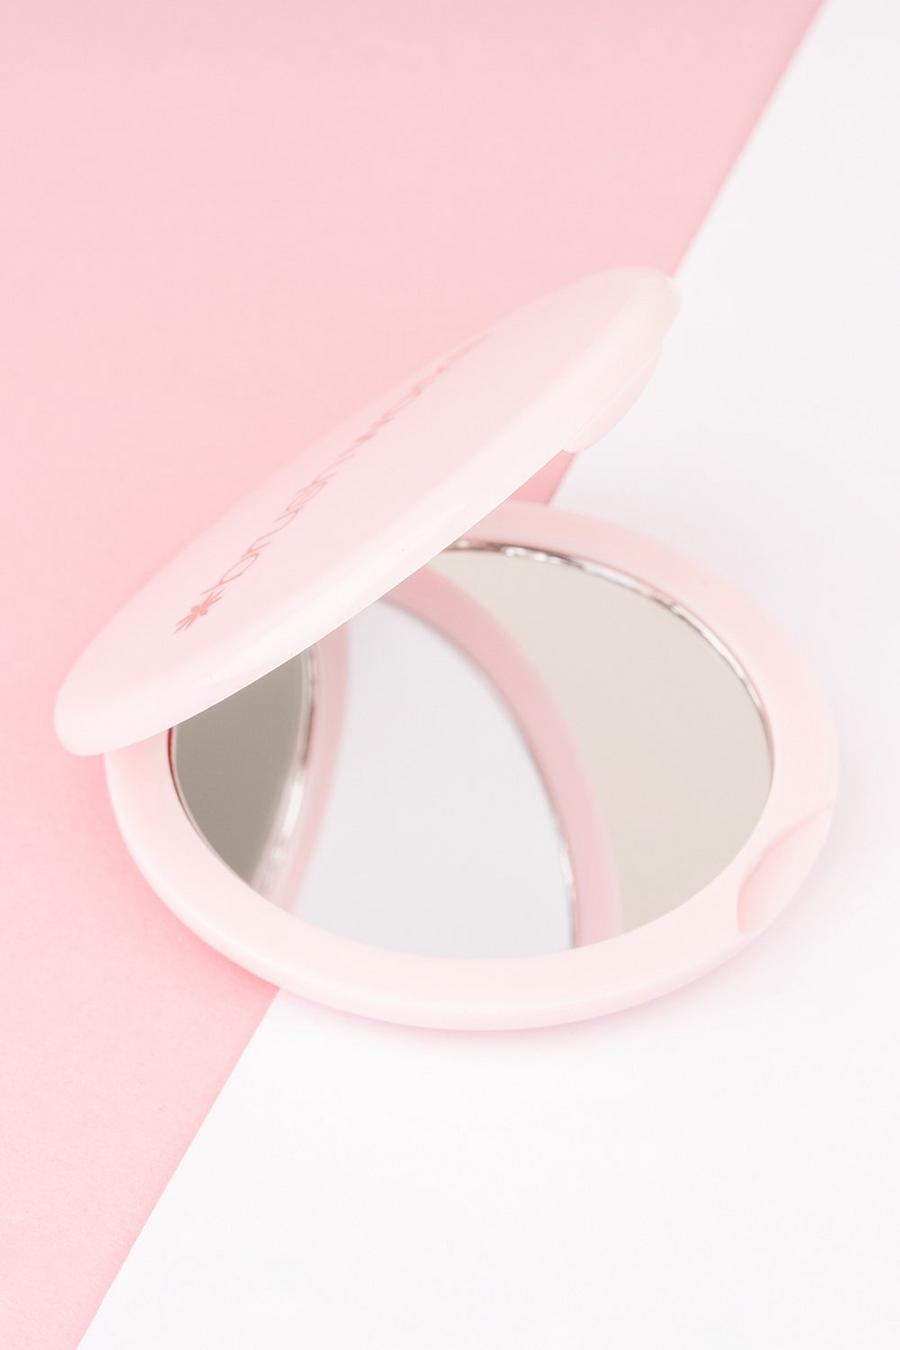 Brushworks Taschenspiegel, Pink rose